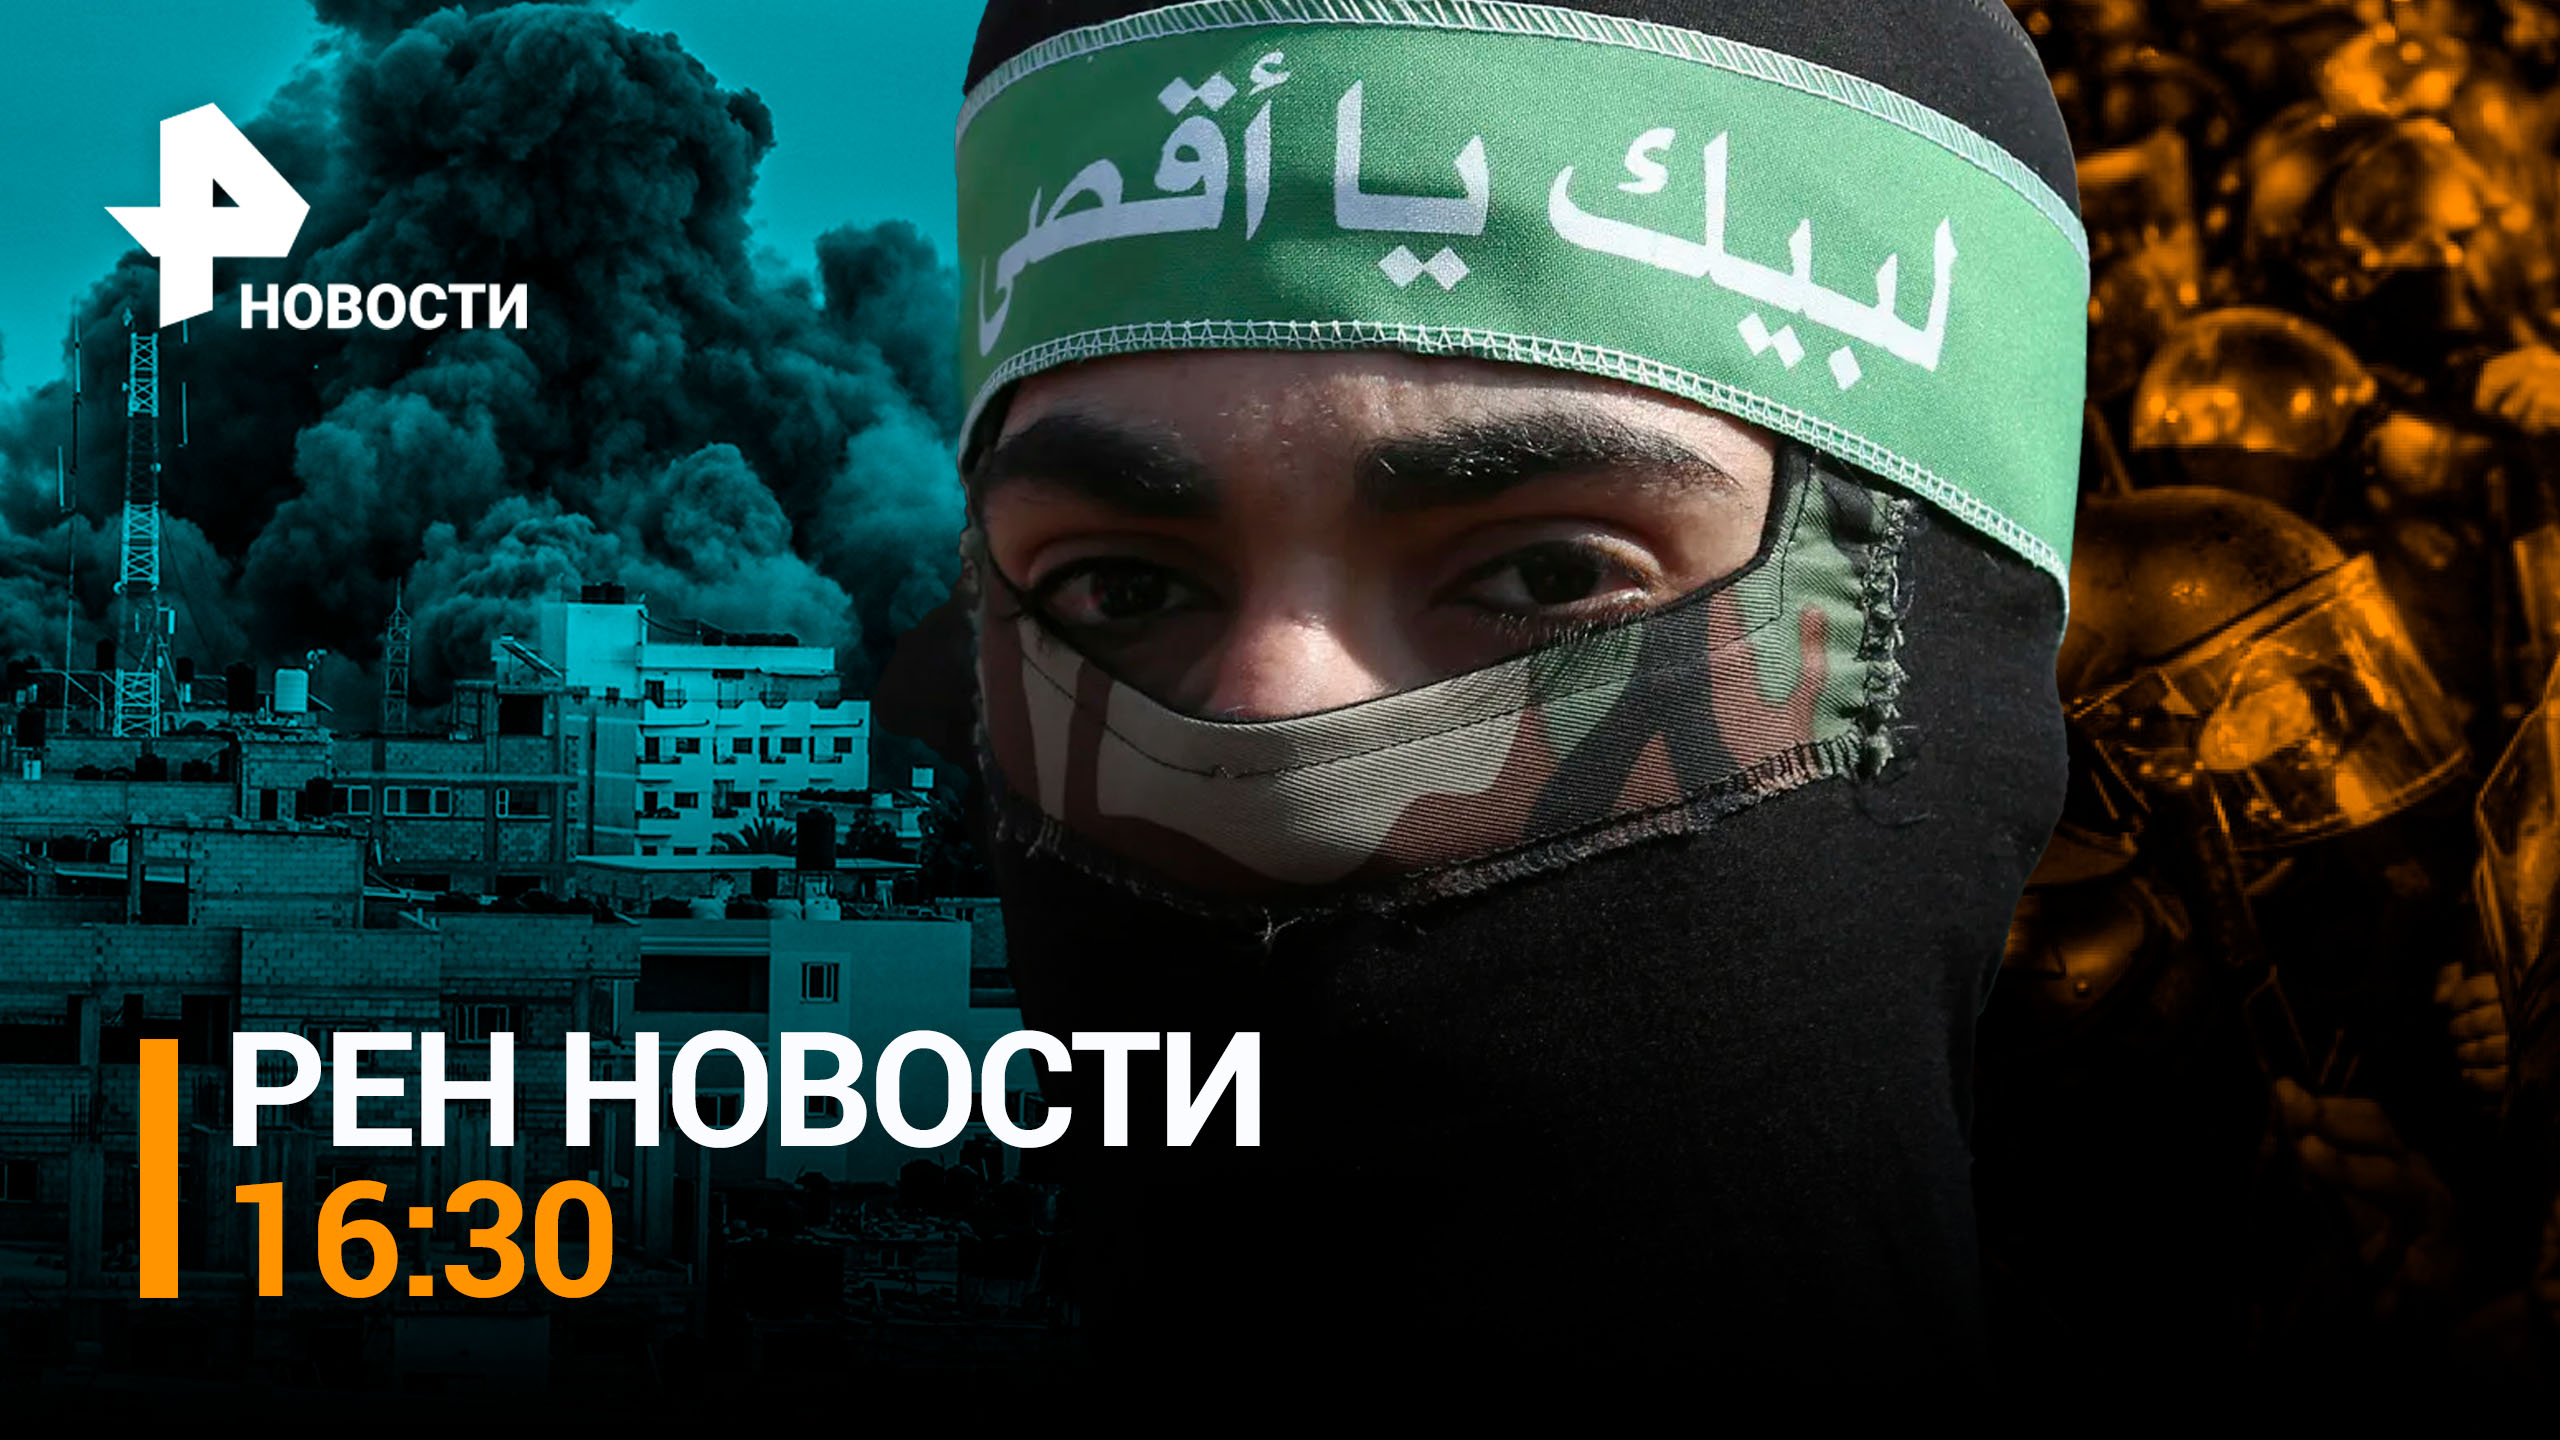 ХАМАС нанес новые удары по Израилю: Тель-Авив пол обстрелом / РЕН НОВОСТИ 16:30 от 16.10.23